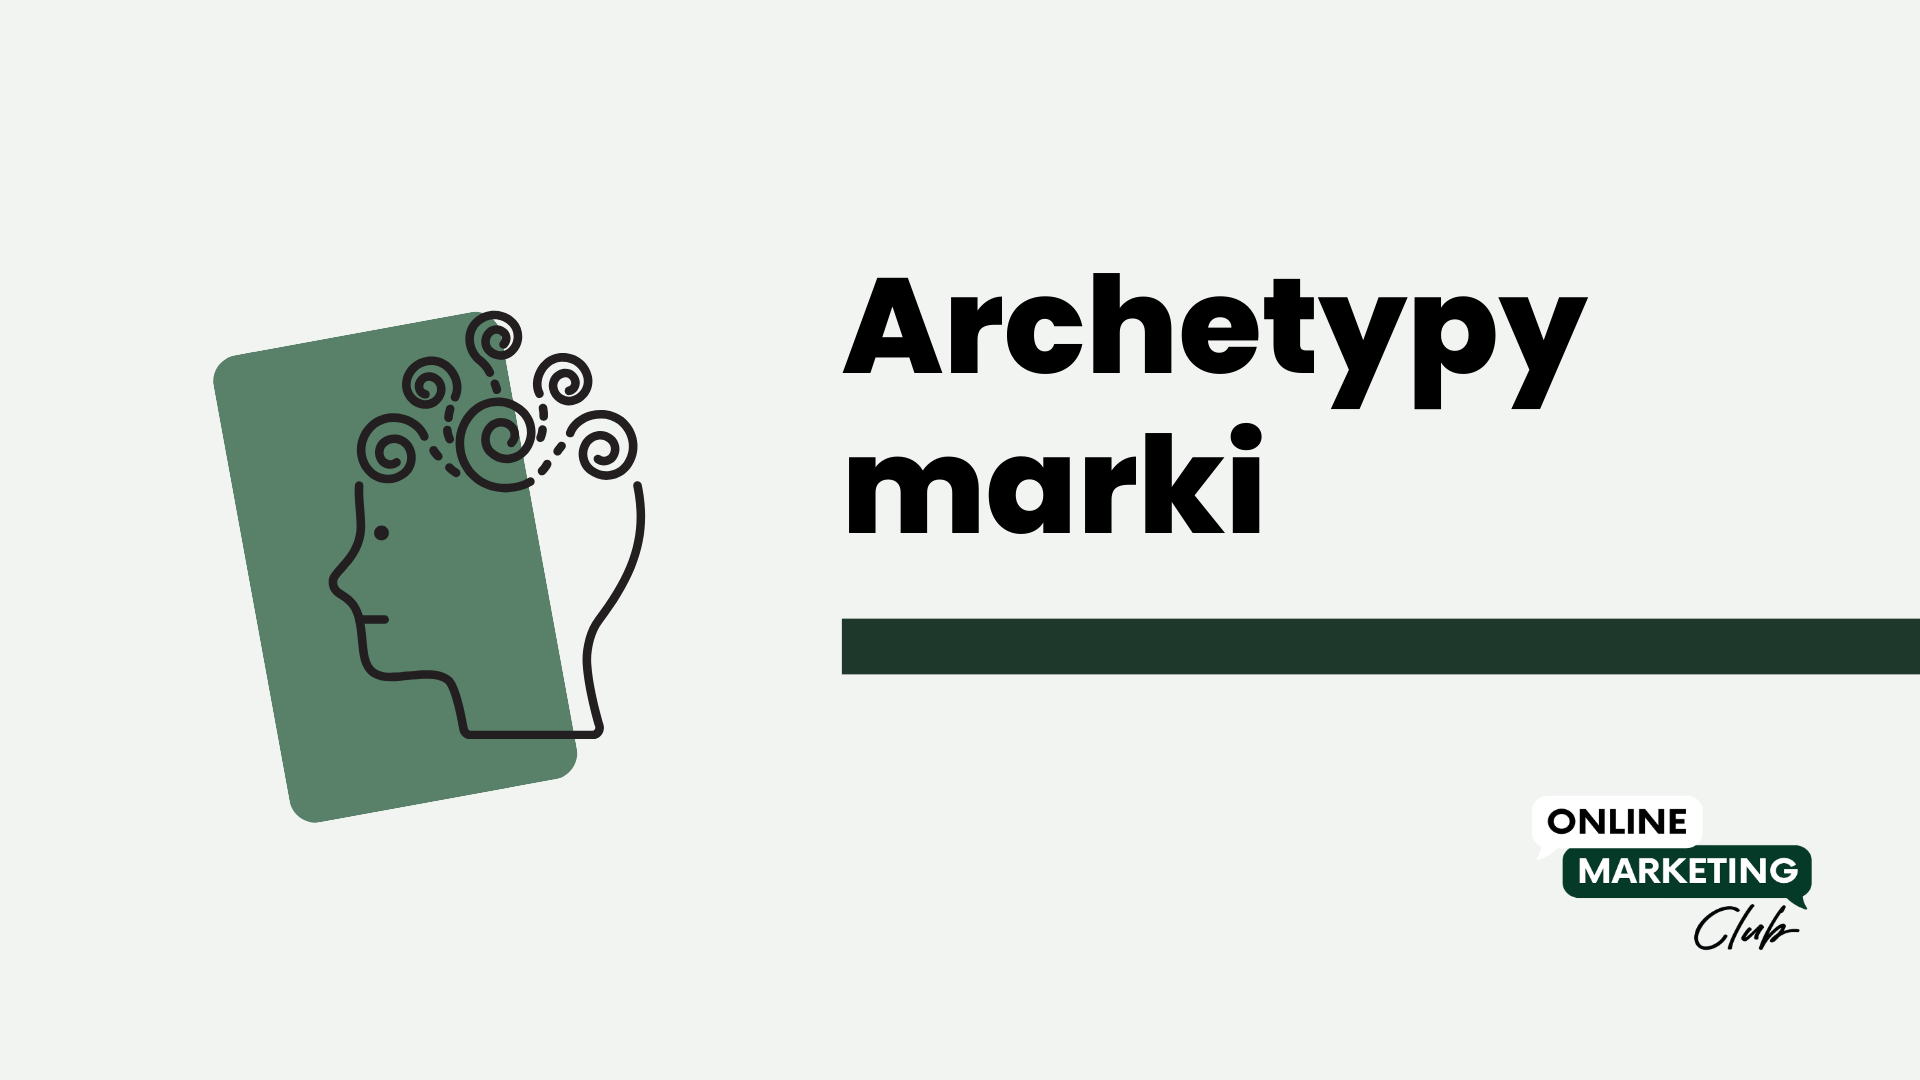 Archetypy marki